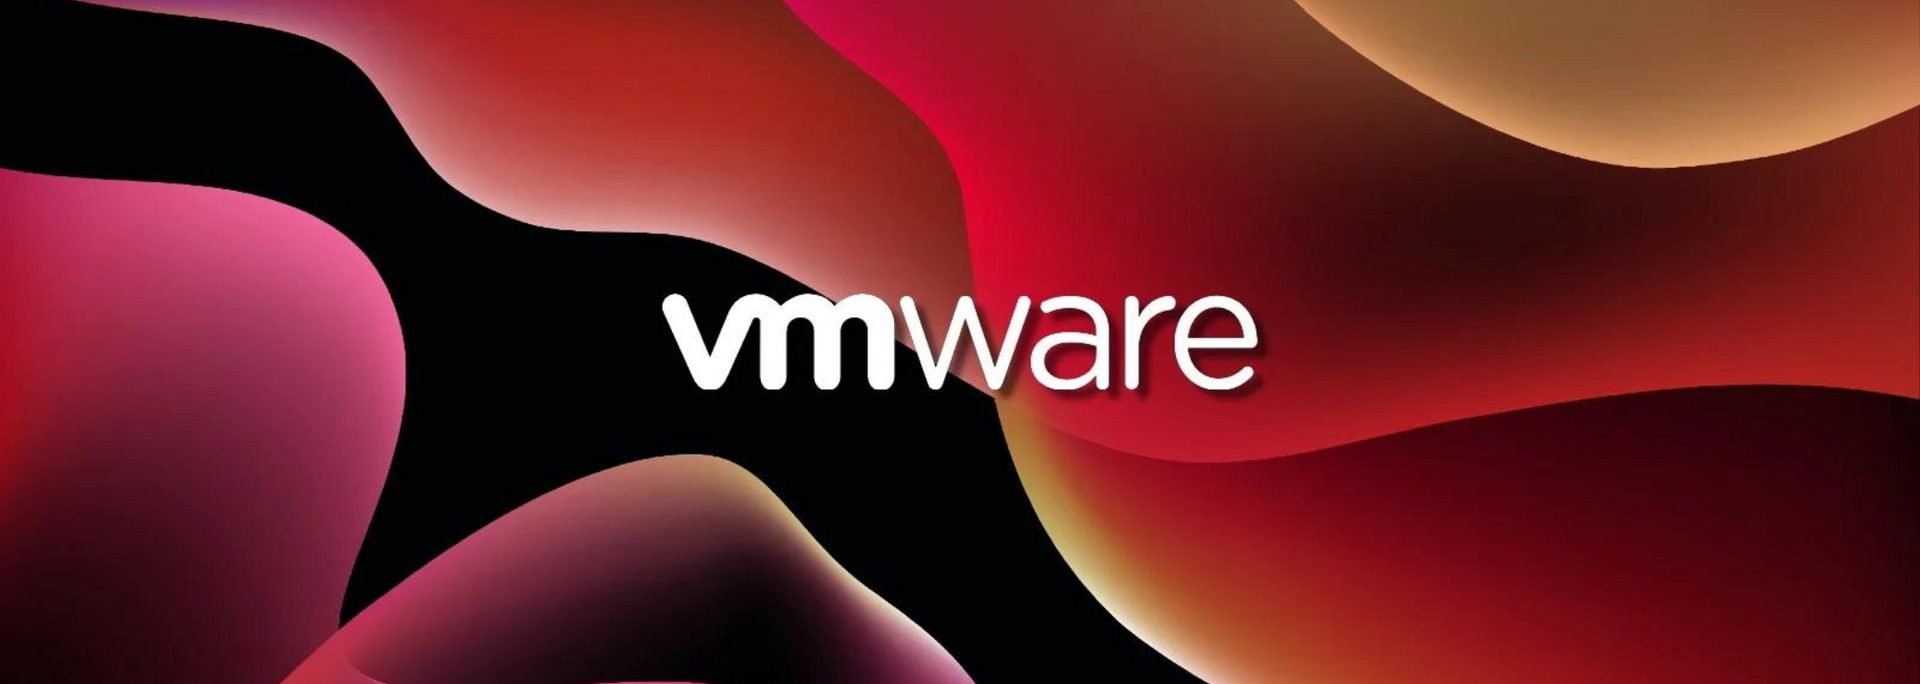 Picture representing VMware.